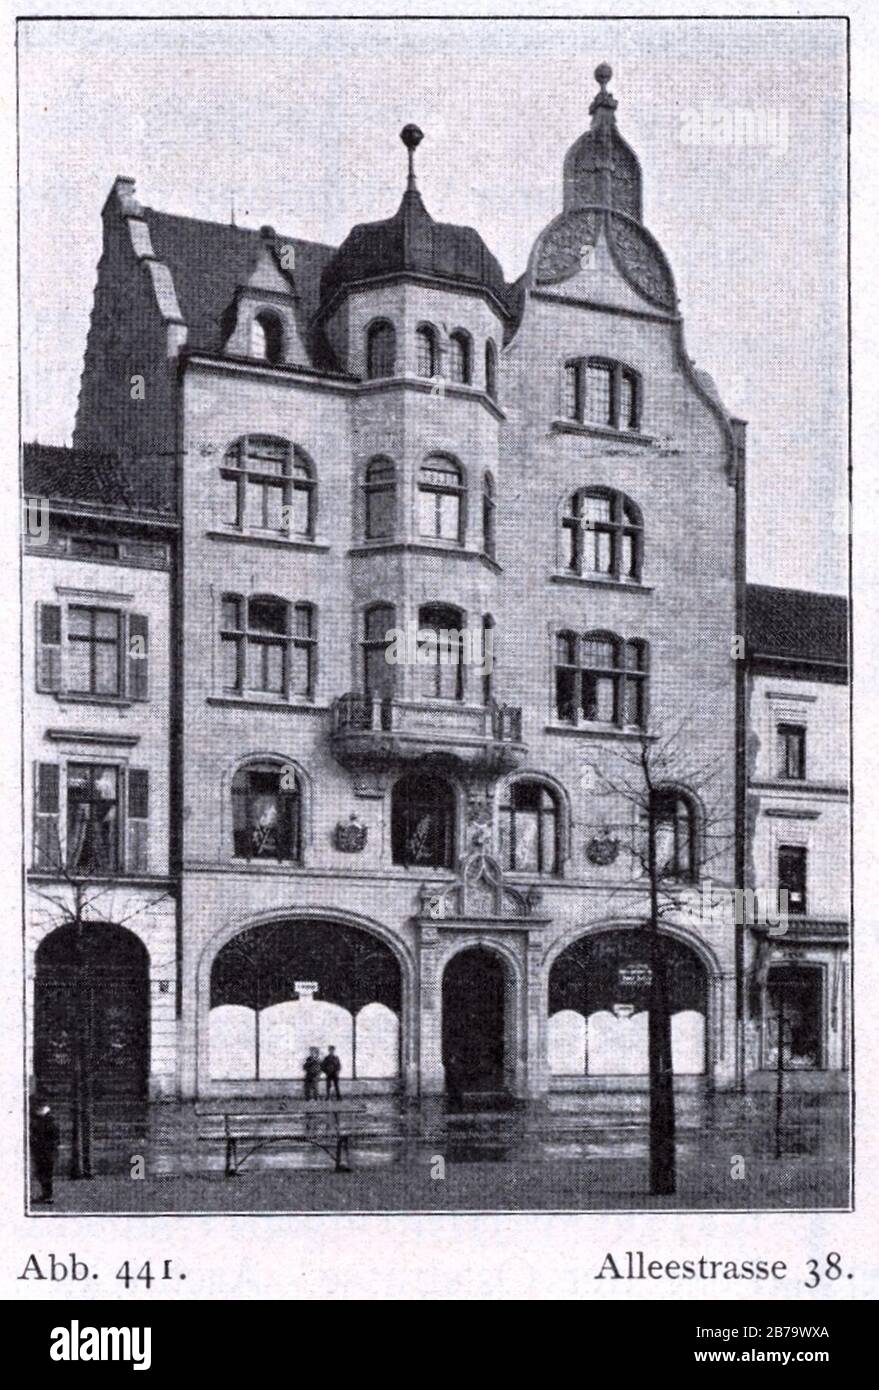 Geschäfts- und Wohnhaus Alleestraße 38 (heute- Heinrich-Heine-Allee) in Düsseldorf, erbaut vor 1904, Architekt Philipp Fischer, Bauherr P. J. Stübben. Stock Photo